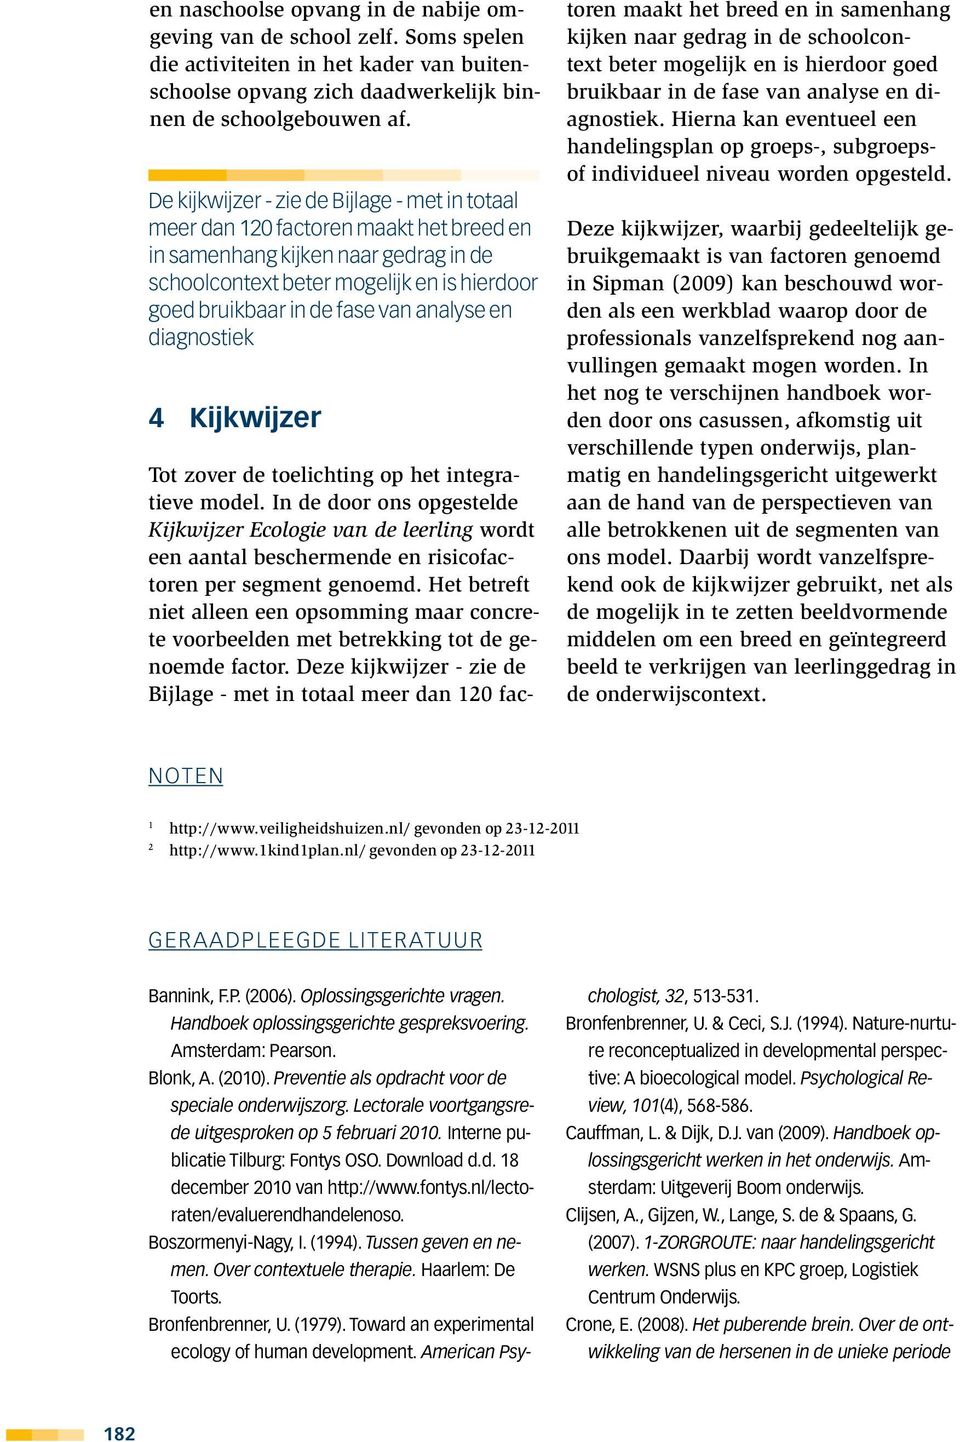 analyse en diagnostiek 4 Kijkwijzer Tot zover de toelichting op het integratieve model.